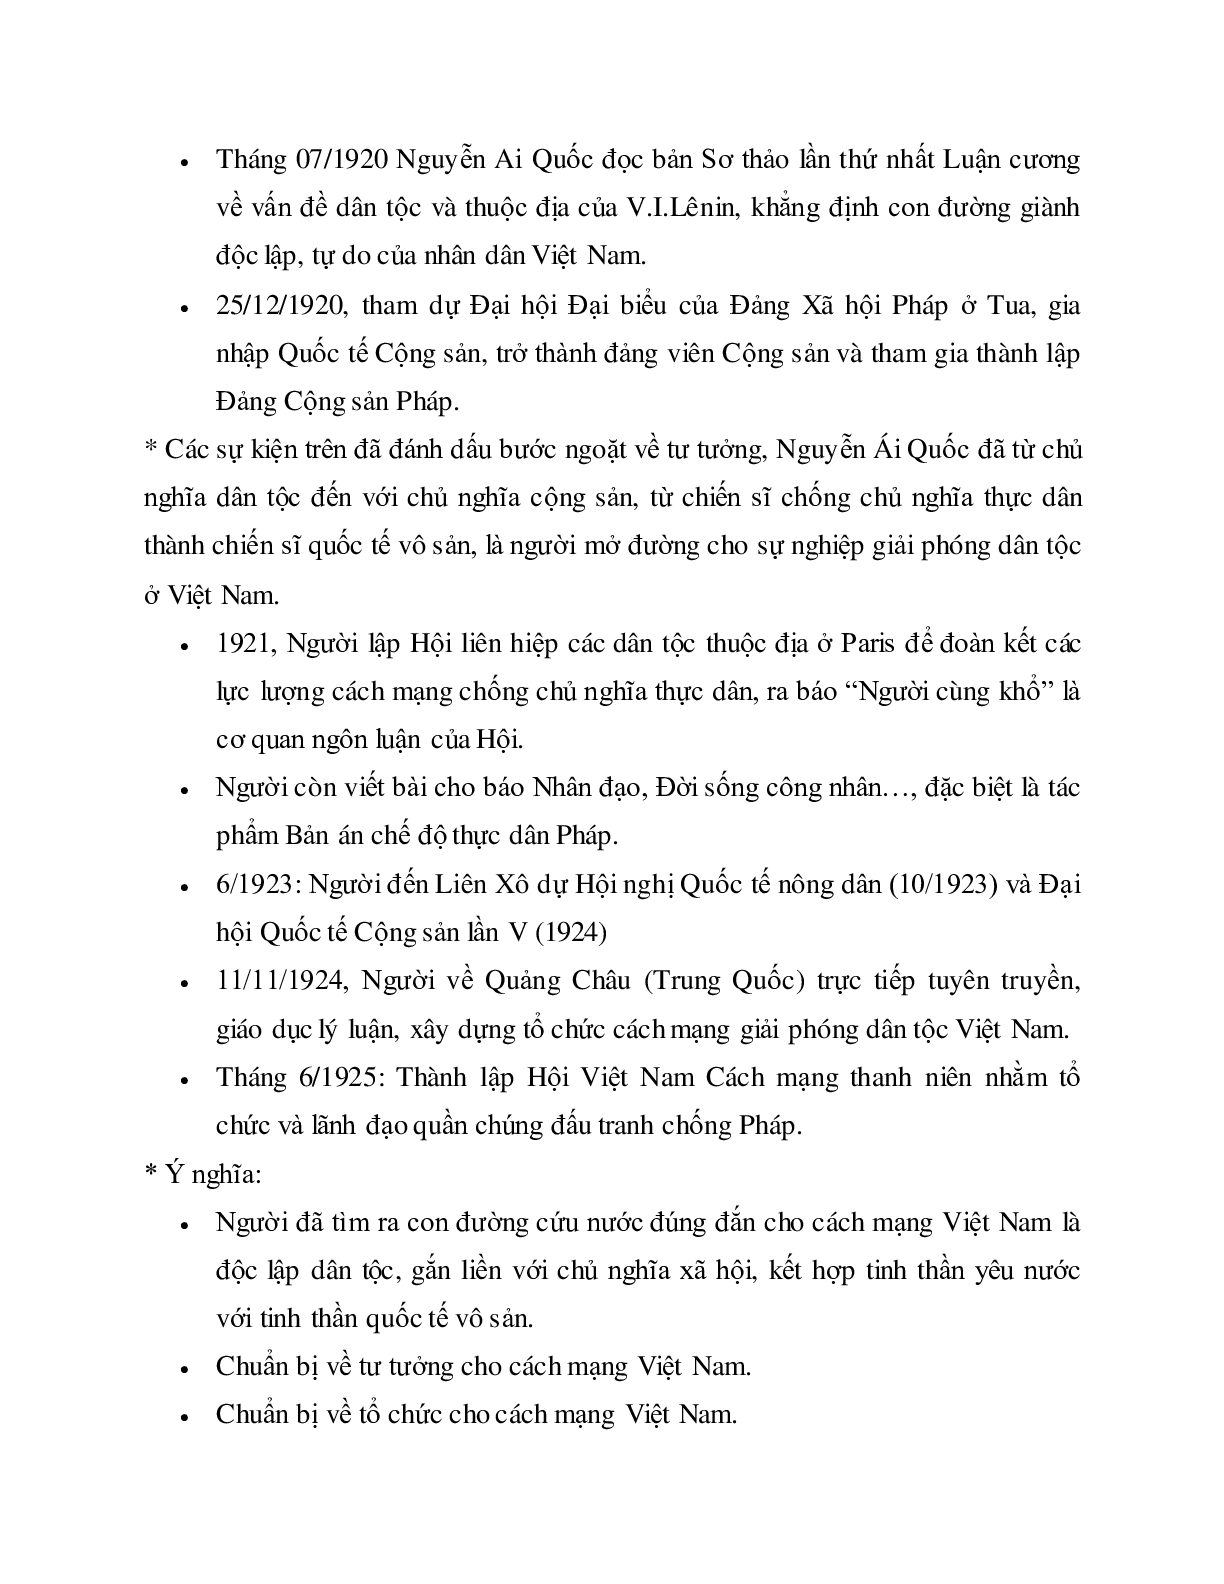 Lý thuyết môn Lịch sử 12: bài 12 - Phong trào dân tộc dân chủ ở Việt Nam từ năm 1919 đến năm 1925 mới nhất (trang 8)